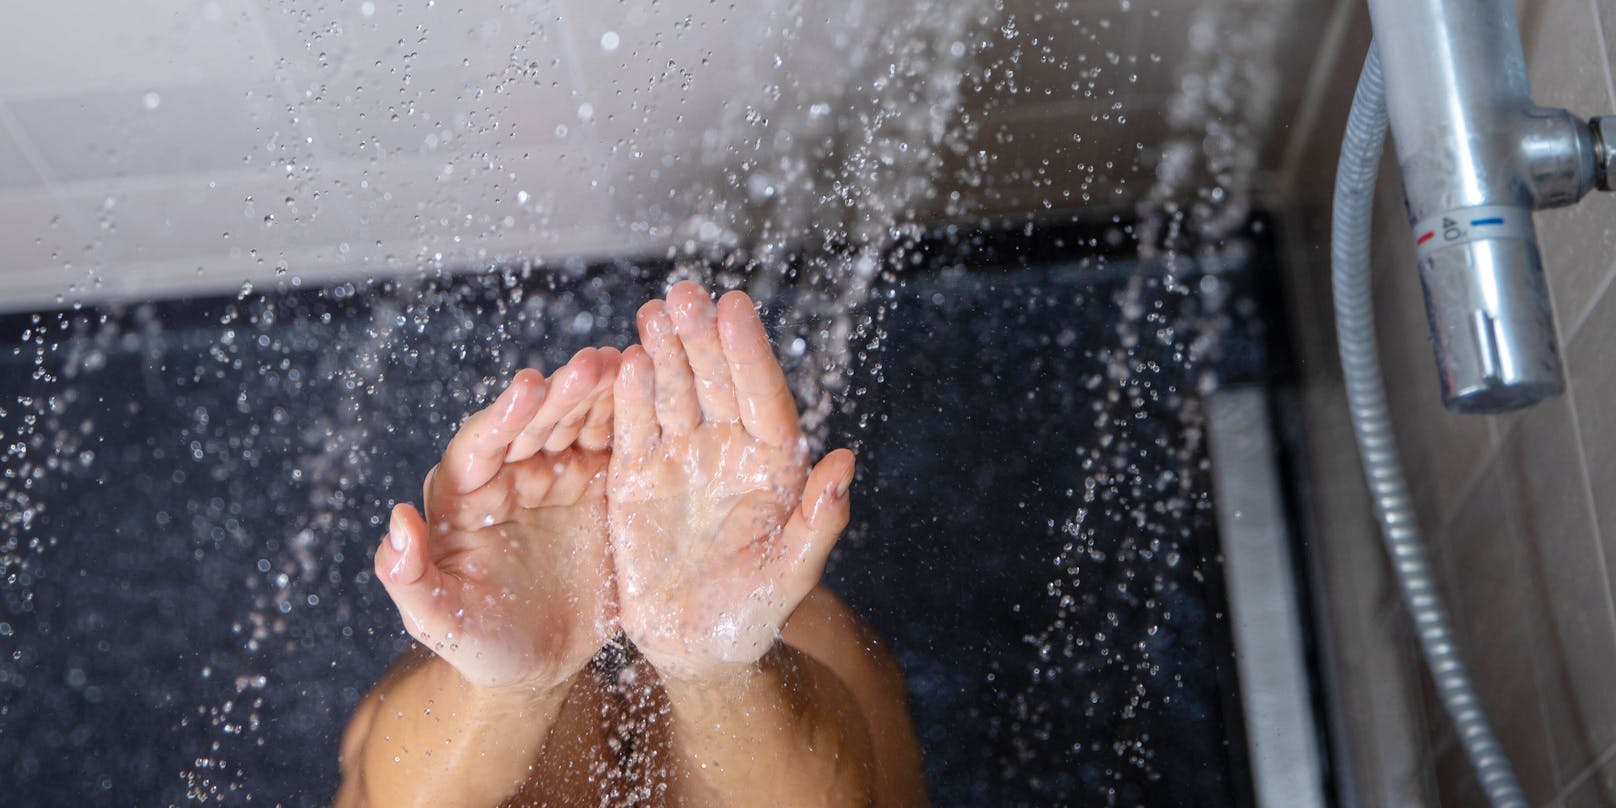 Die Zwölfjährige ist so allergisch gegen Wasser, dass eine Dusche sie töten könnte.